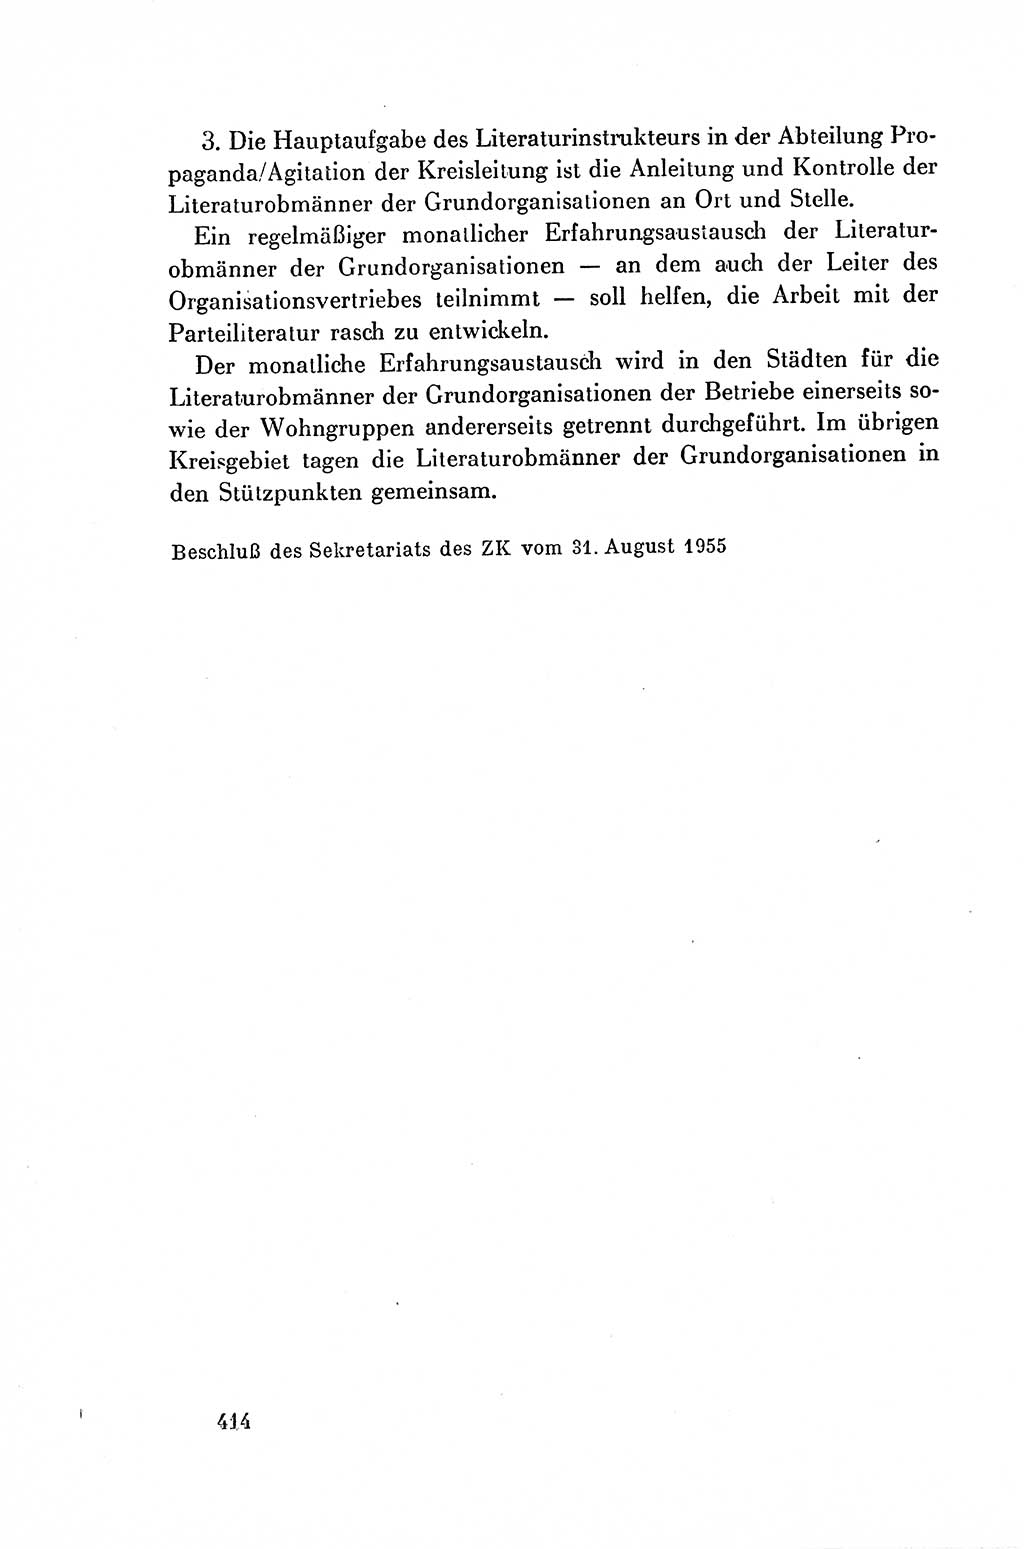 Dokumente der Sozialistischen Einheitspartei Deutschlands (SED) [Deutsche Demokratische Republik (DDR)] 1954-1955, Seite 414 (Dok. SED DDR 1954-1955, S. 414)